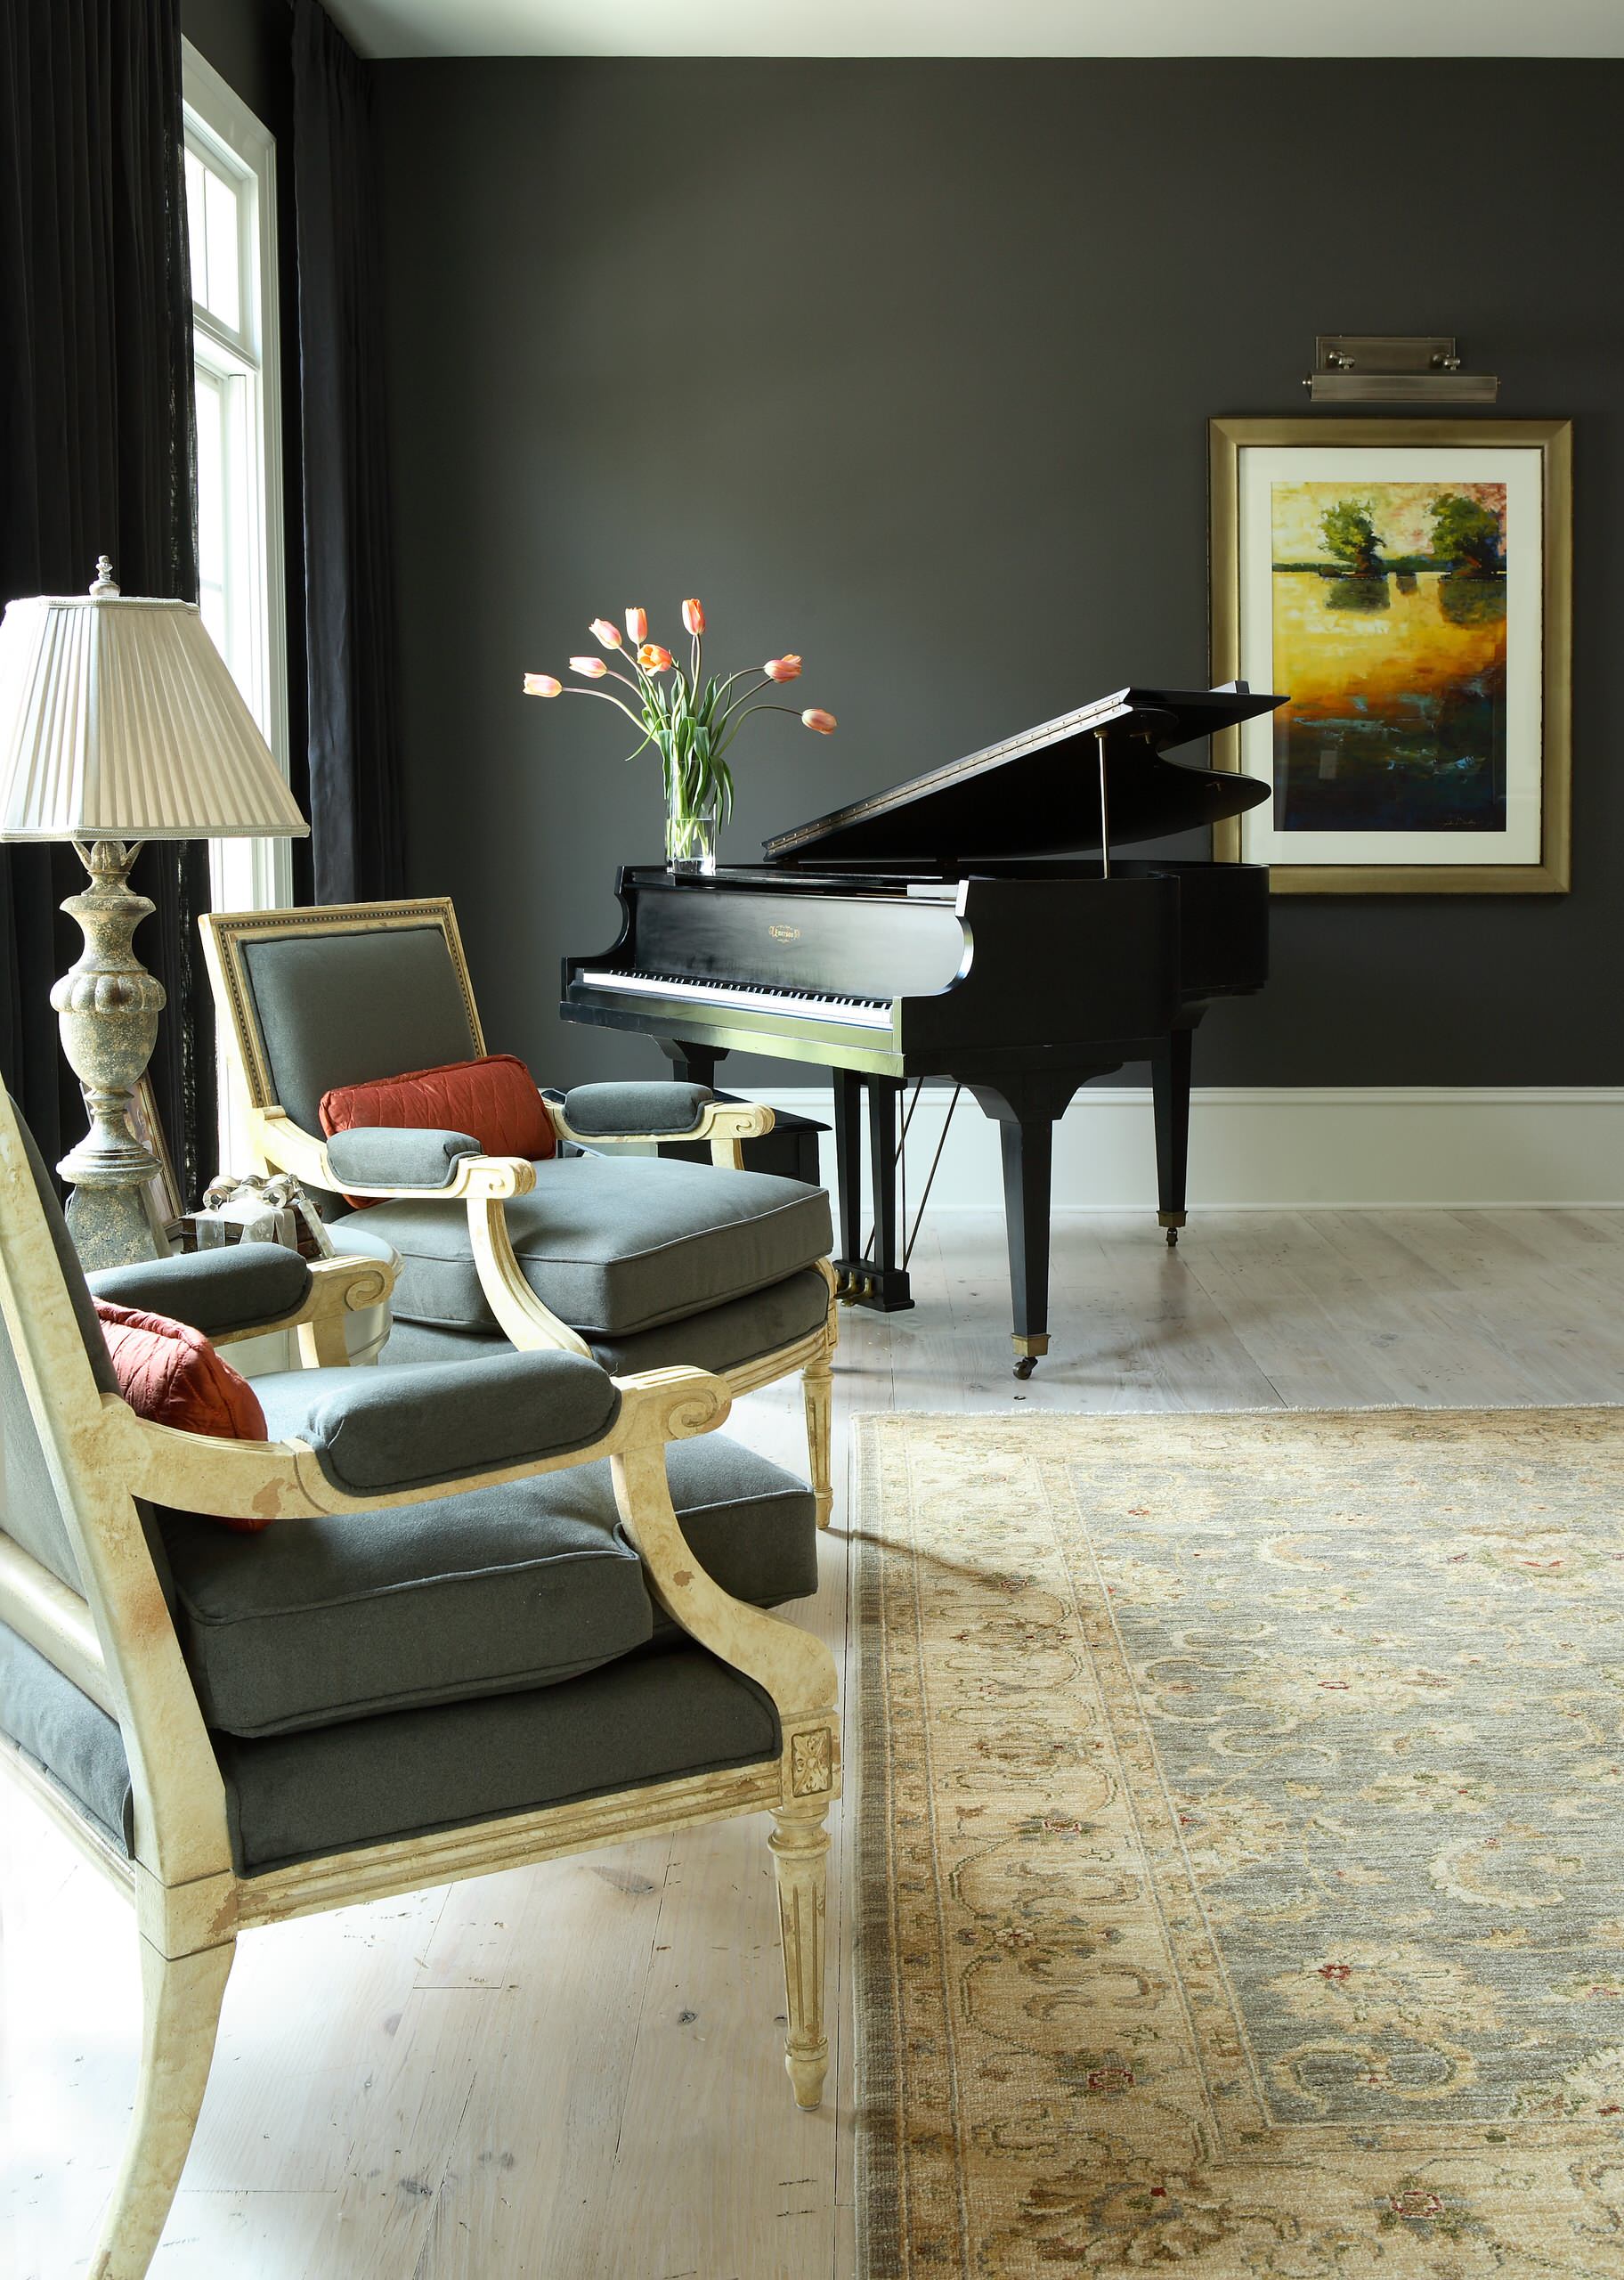 Decorating A Piano Room - Photos & Ideas | Houzz